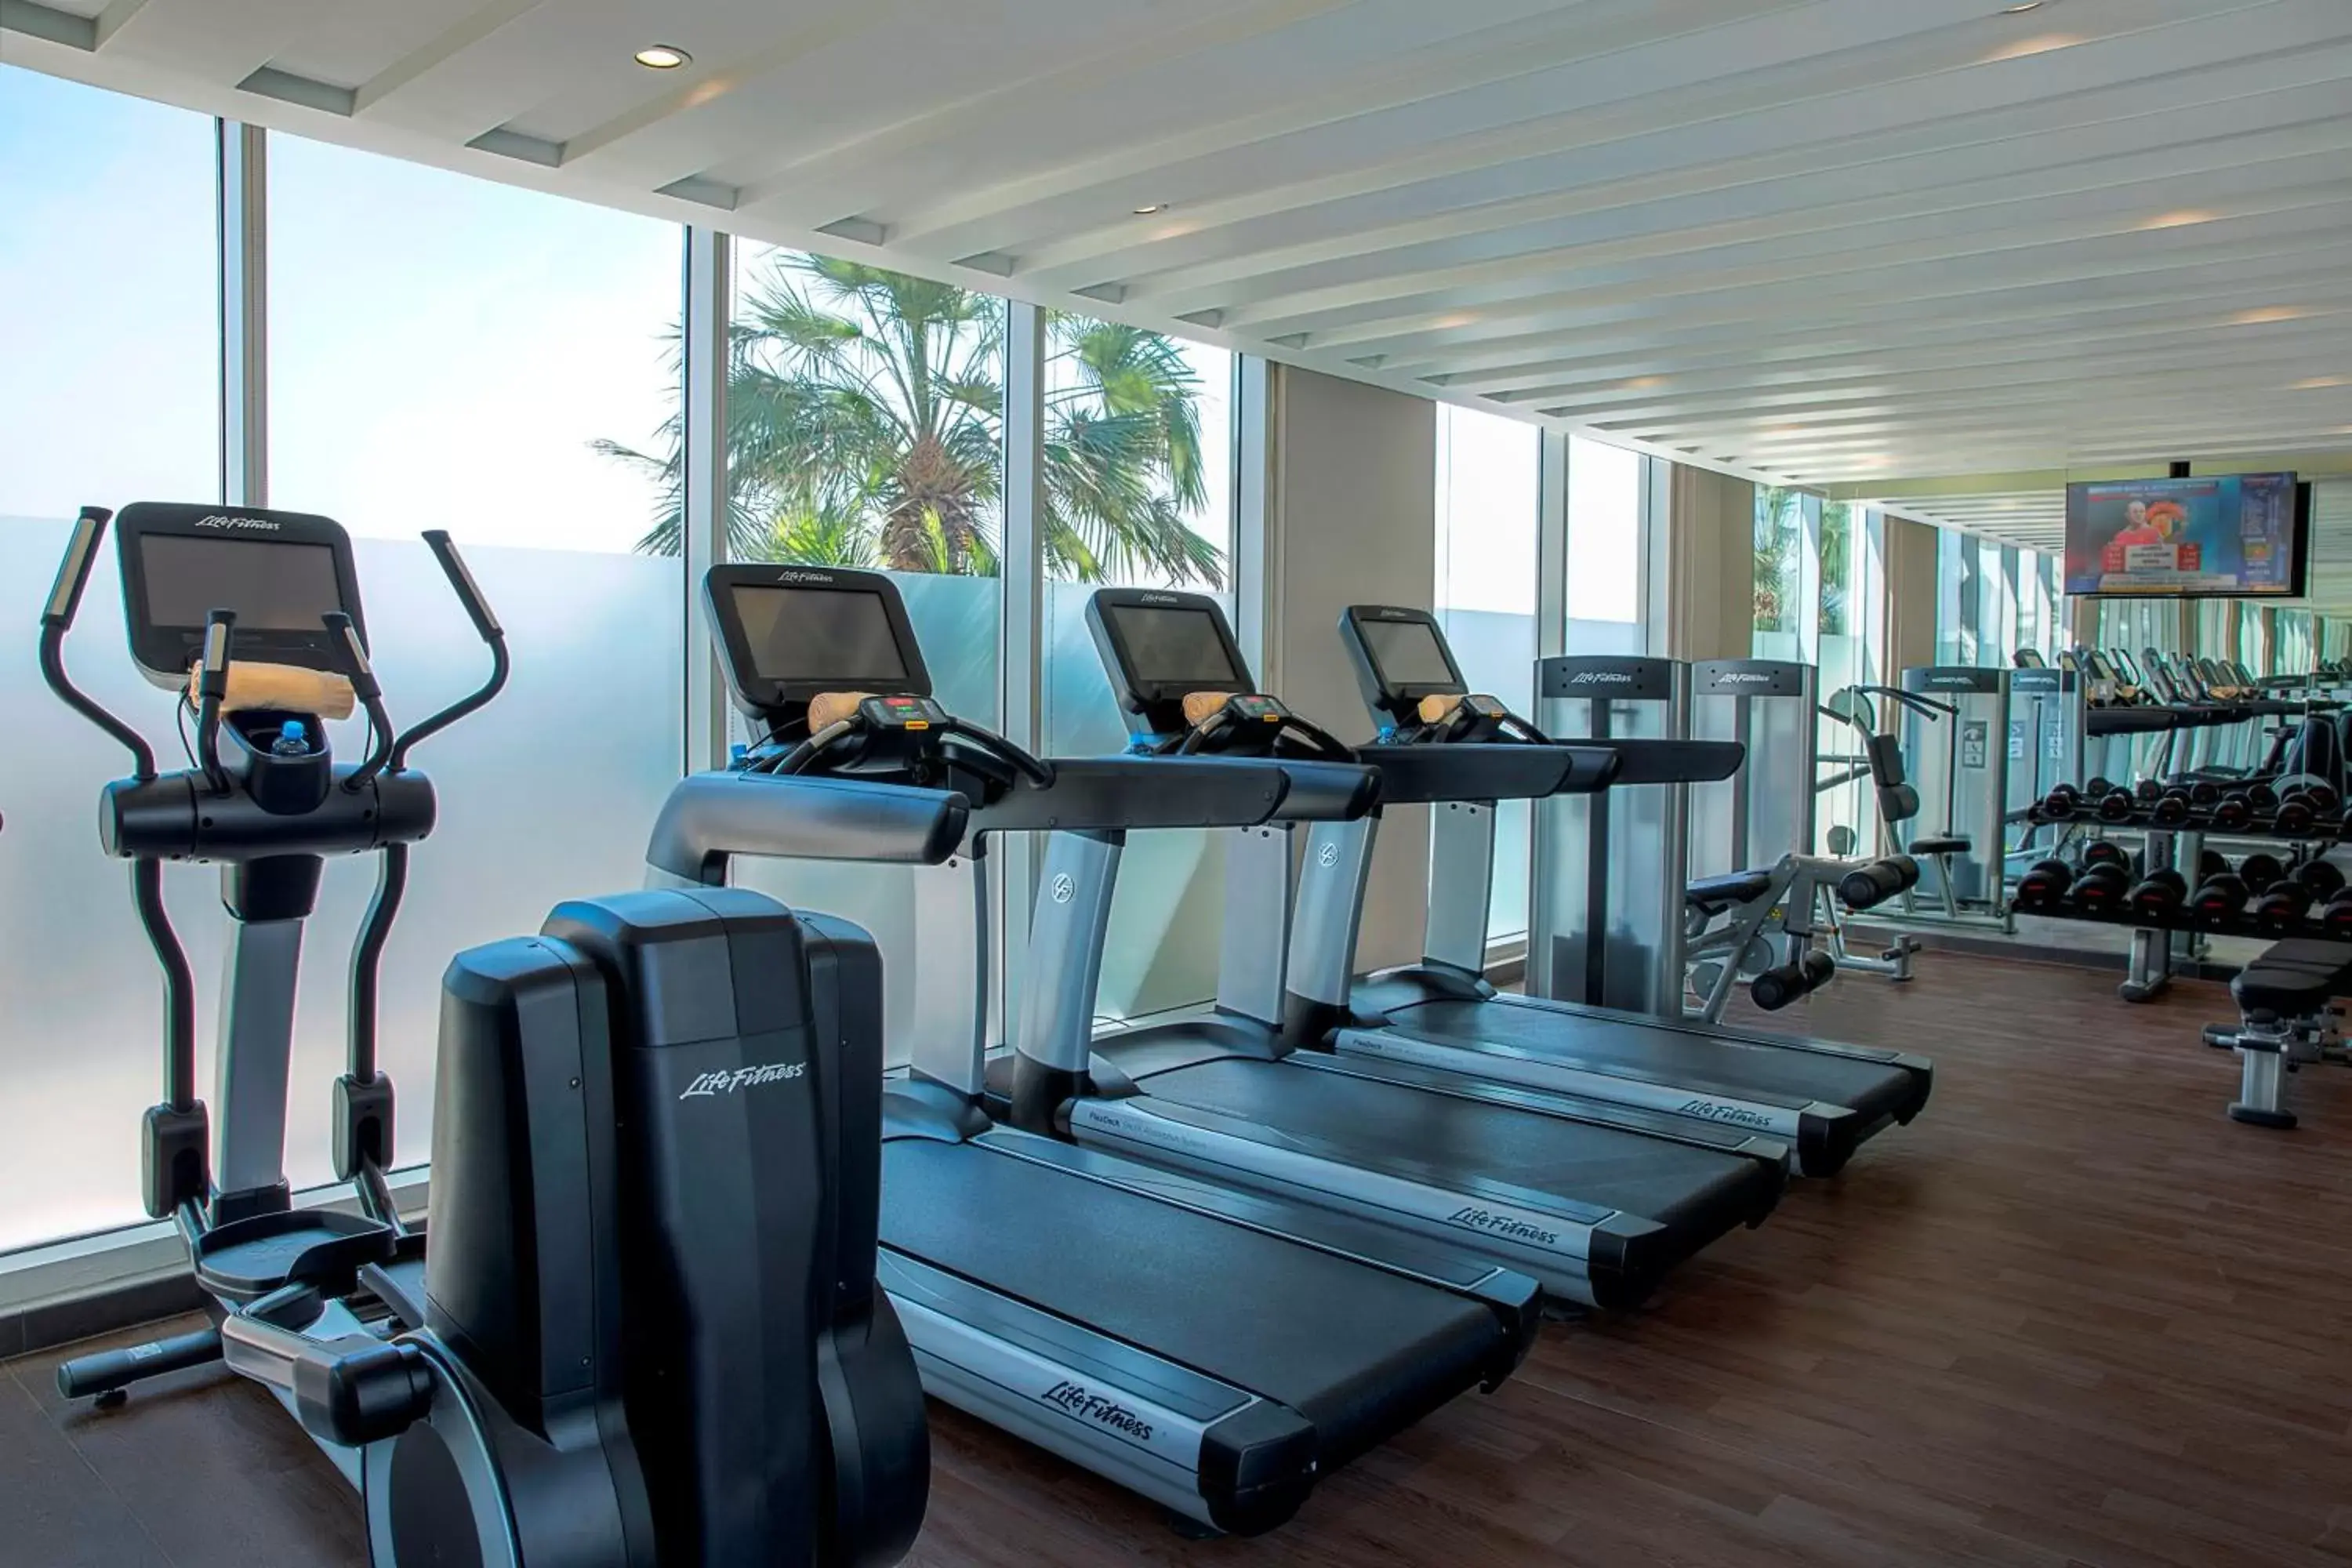 Fitness centre/facilities, Fitness Center/Facilities in Centro Capital Doha - By Rotana